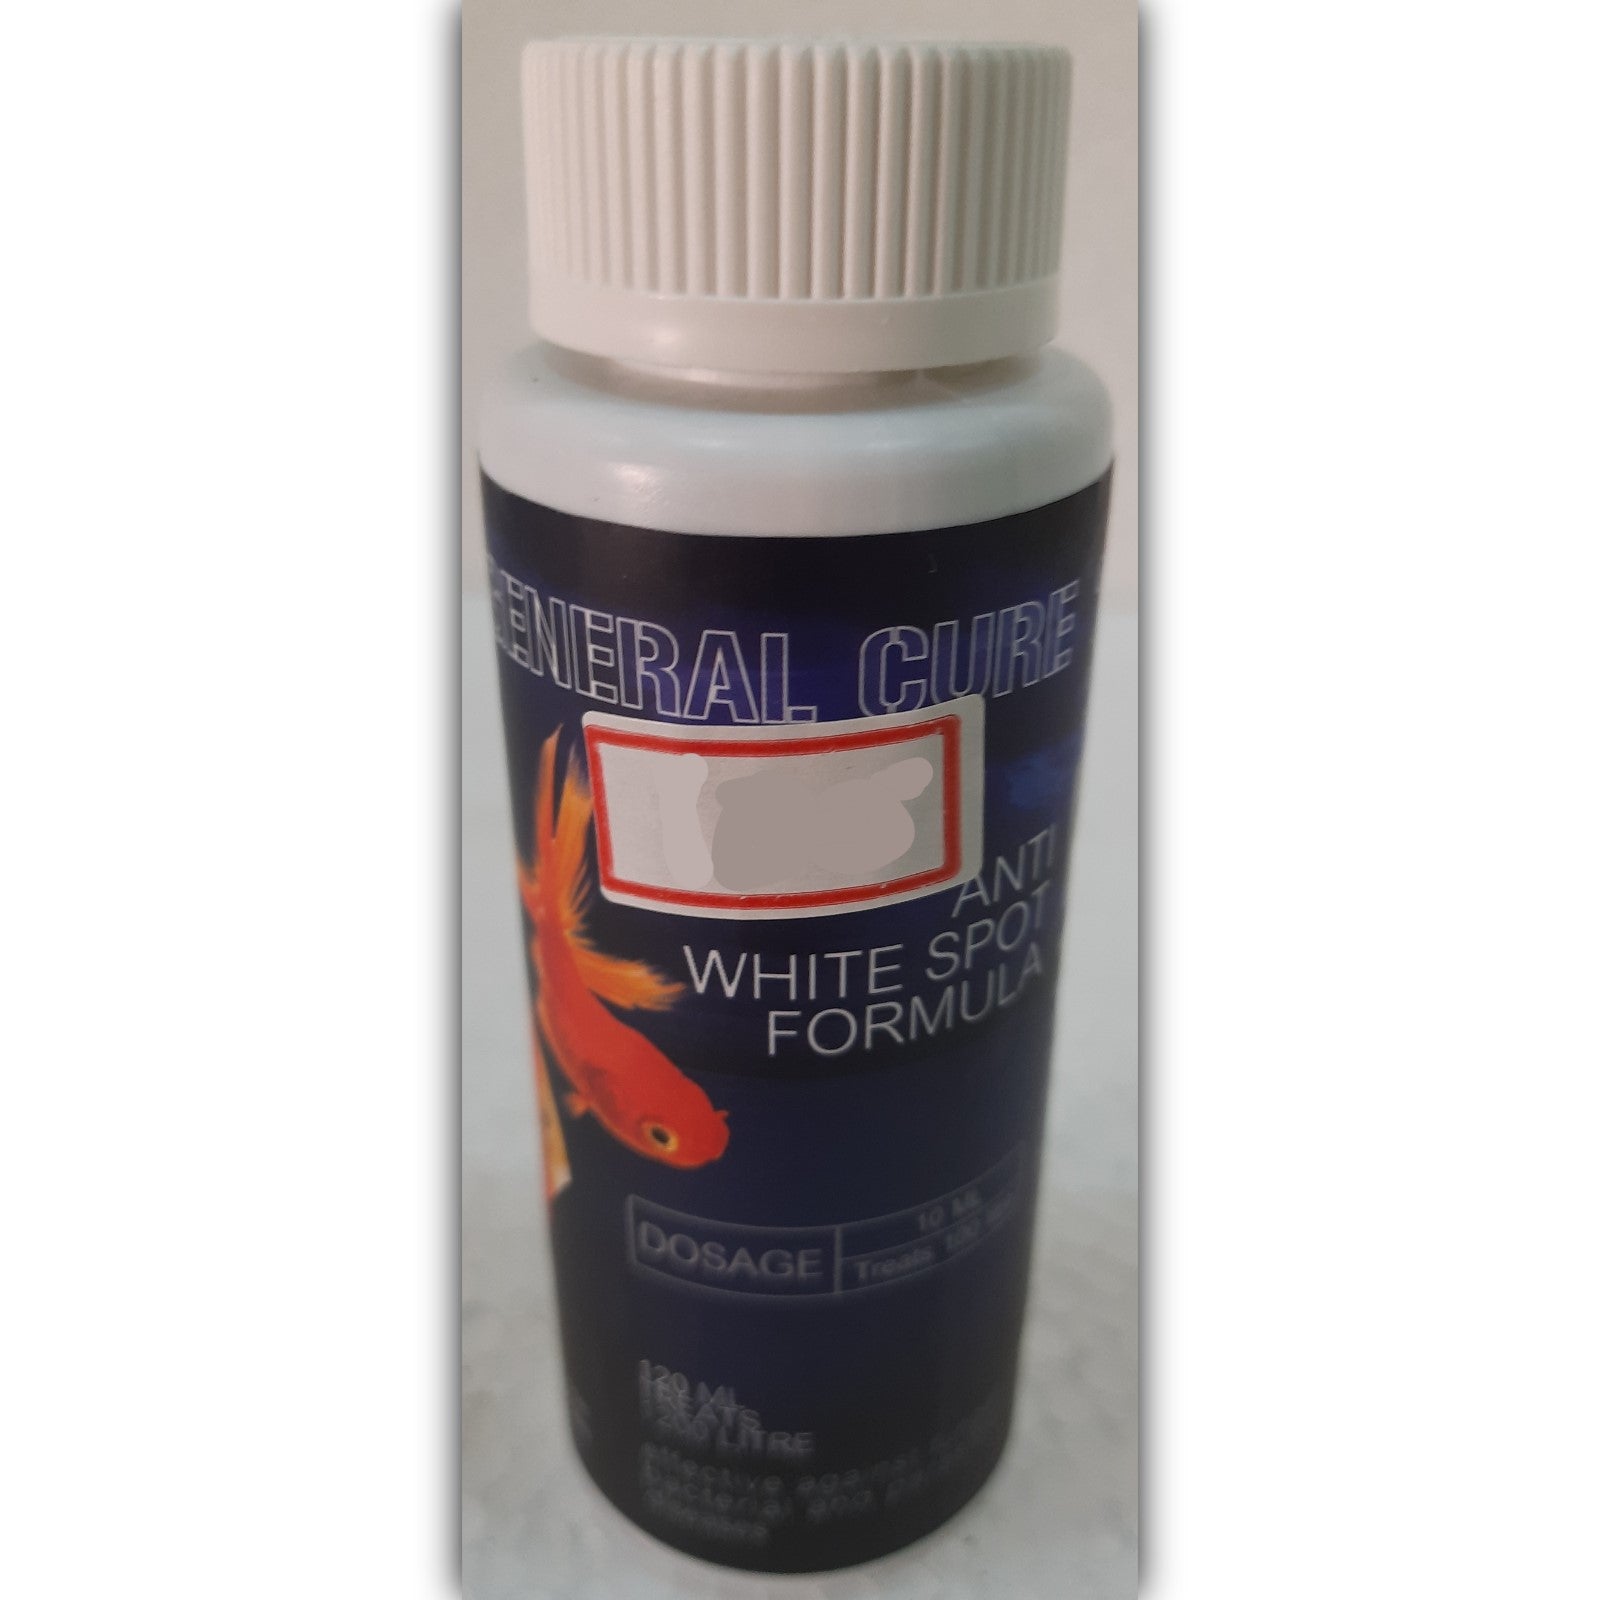 General Cure - Anti White Spot Formula 60 ml